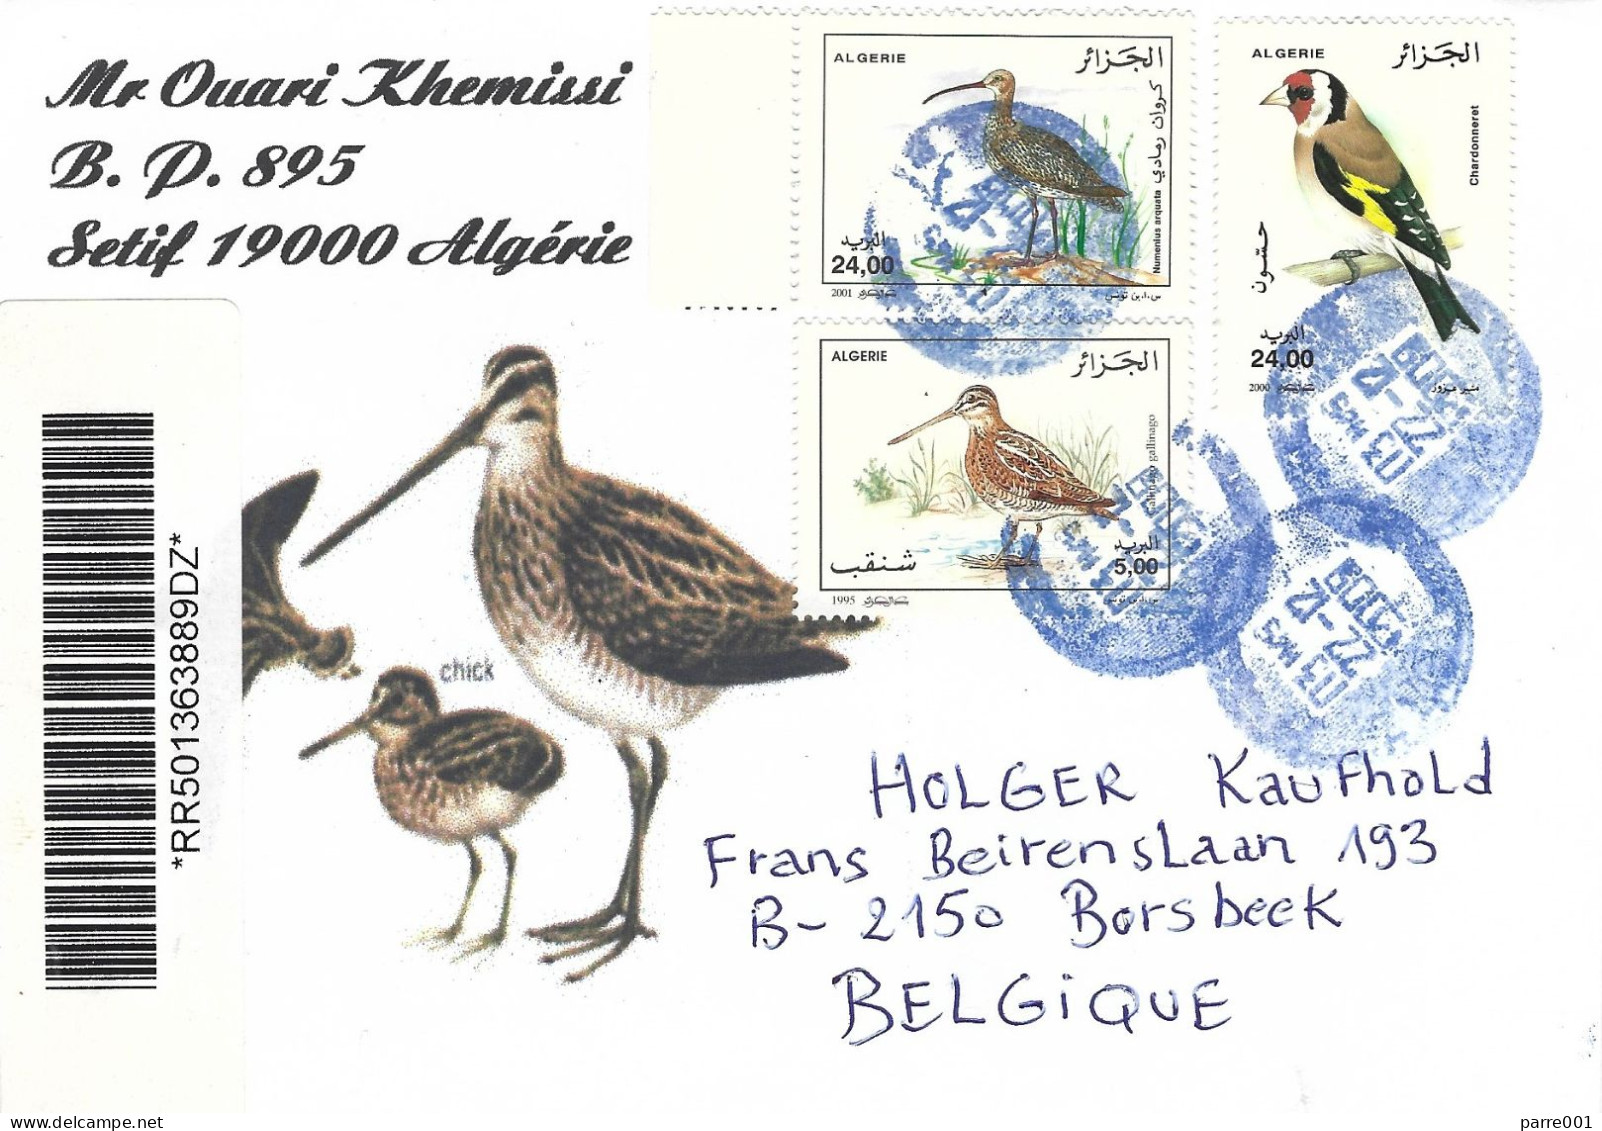 Algeria Algerie 2009 Alger Gold Finch Common Curlew Numenius Arquata Registered Cover - Songbirds & Tree Dwellers